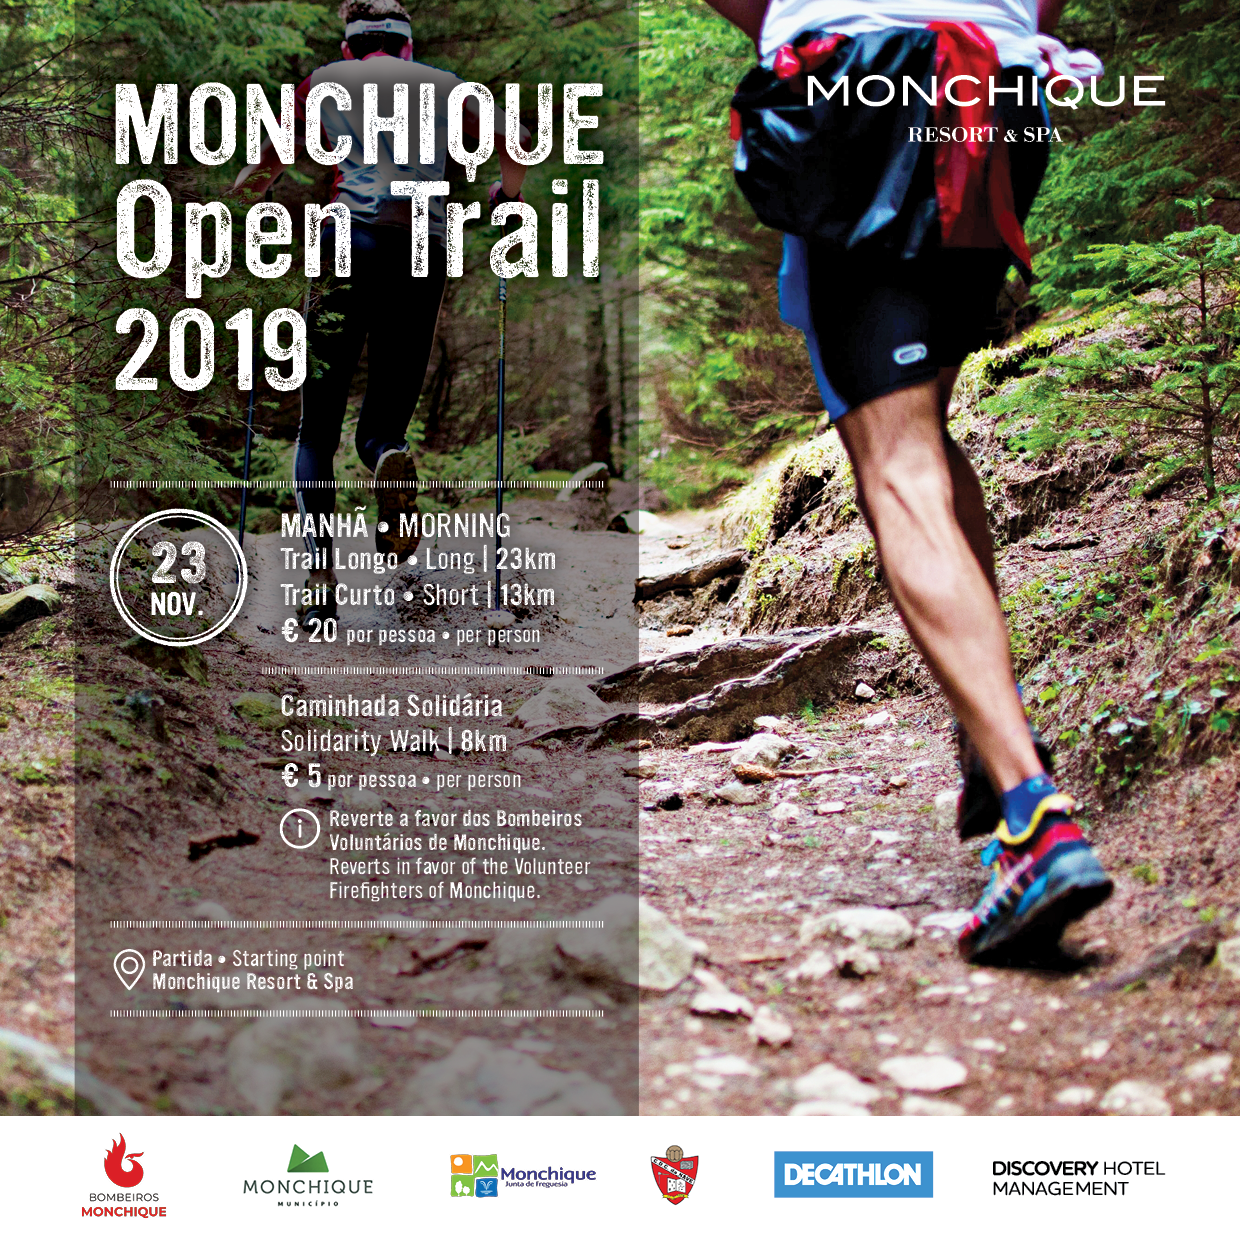 Monchique Open Trail 2019